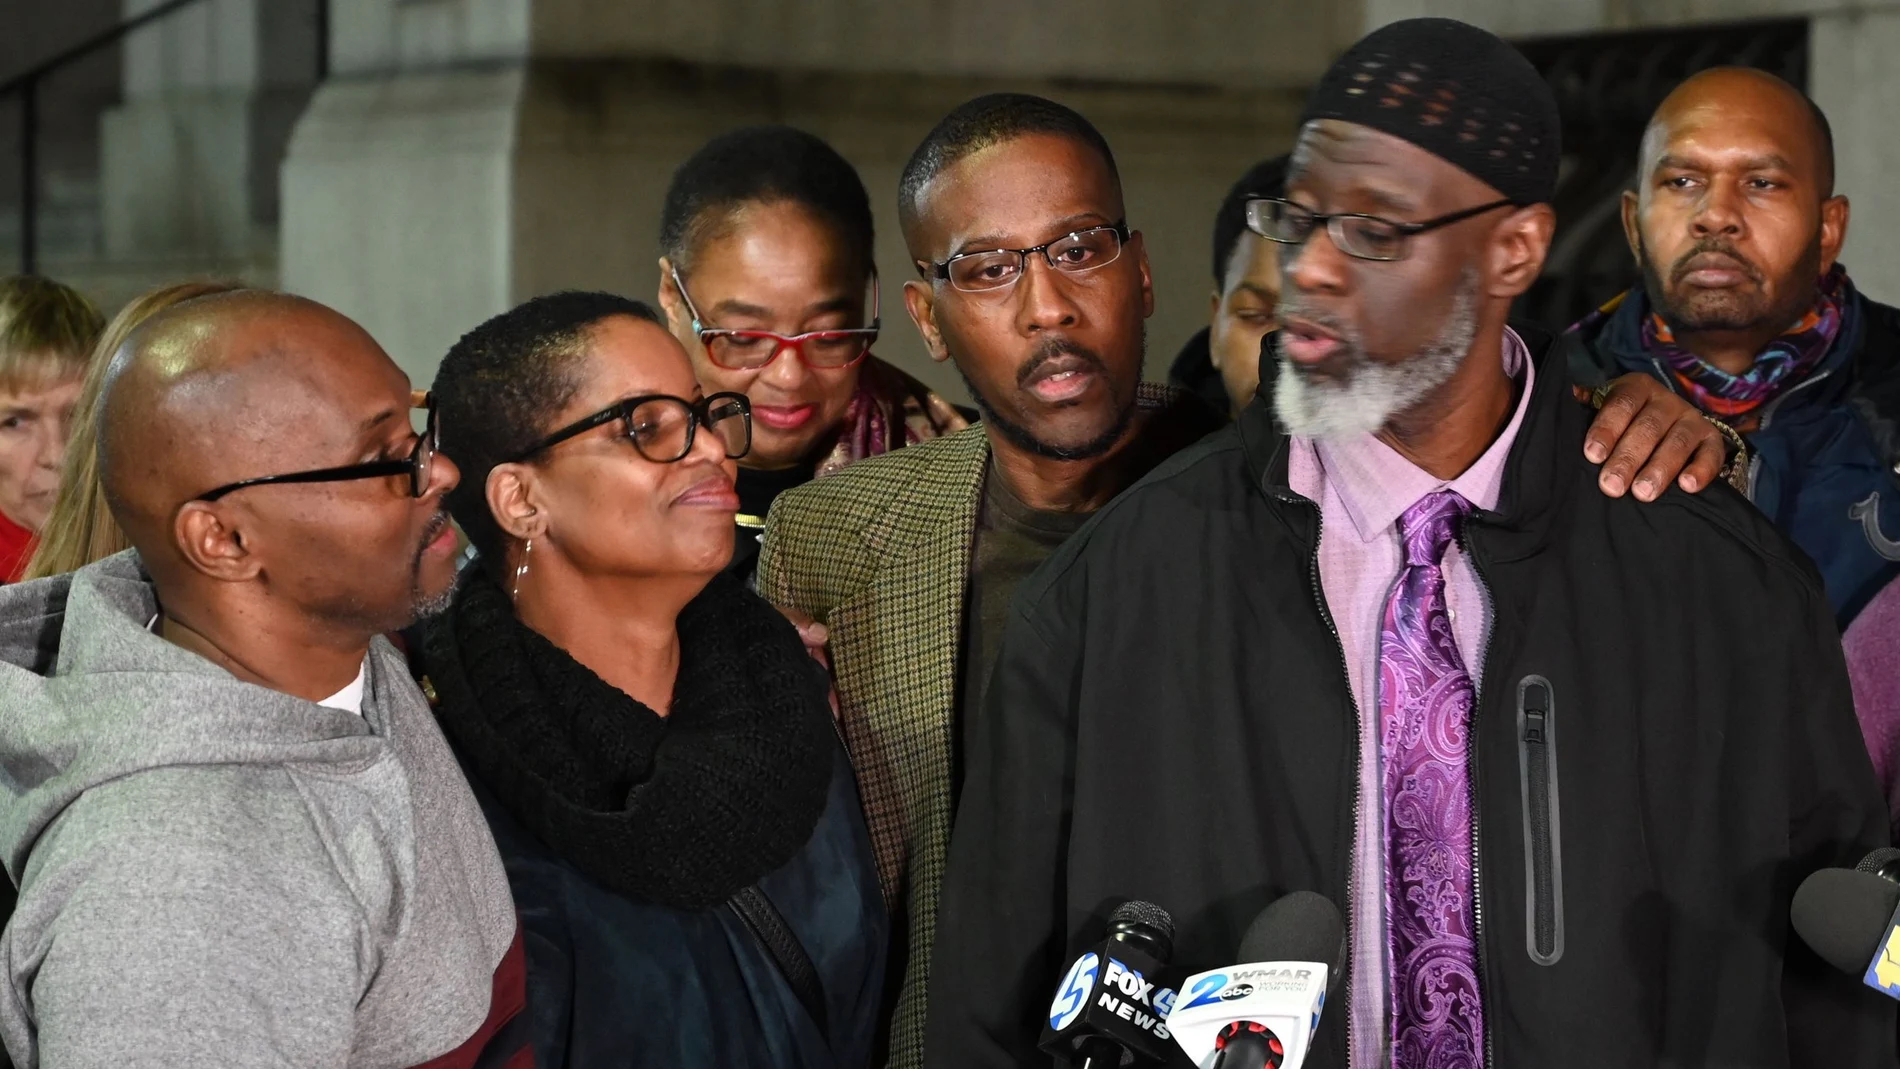 El "trío de Maryland" después de haber sido liberados tras cumplir 36 años de prisión de forma injusta